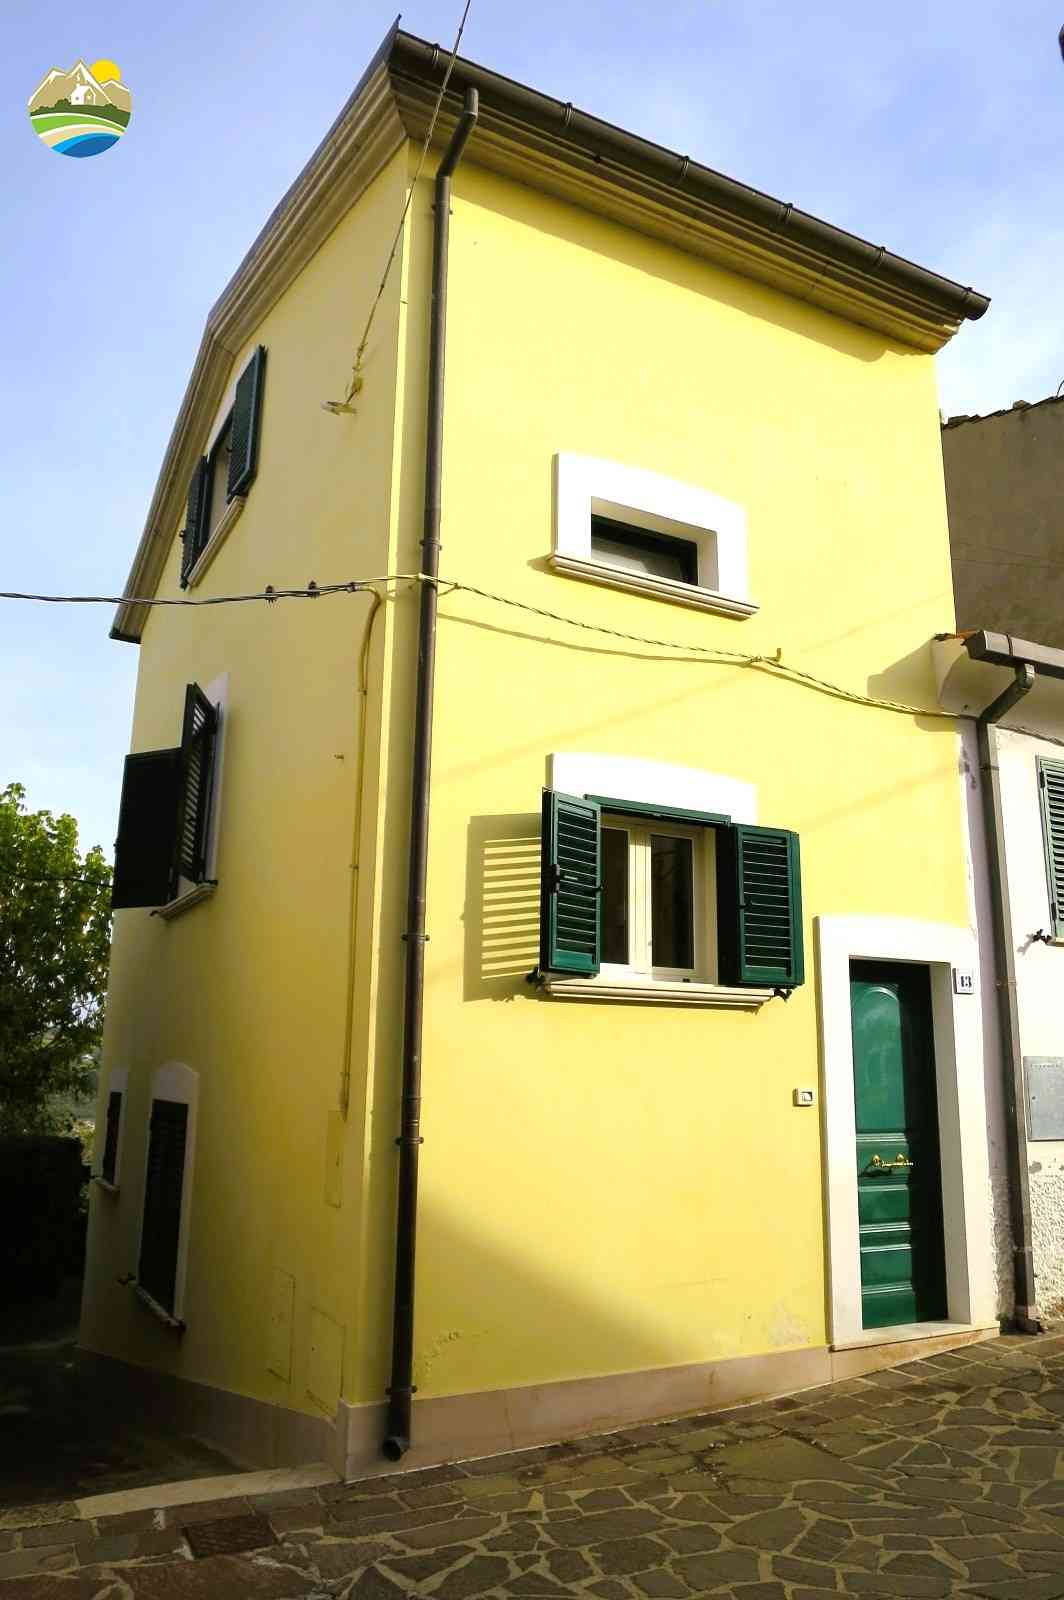 Townhouse Townhouse for sale Picciano (PE), Casa Bomboniera - Picciano - EUR 48.828 650 small